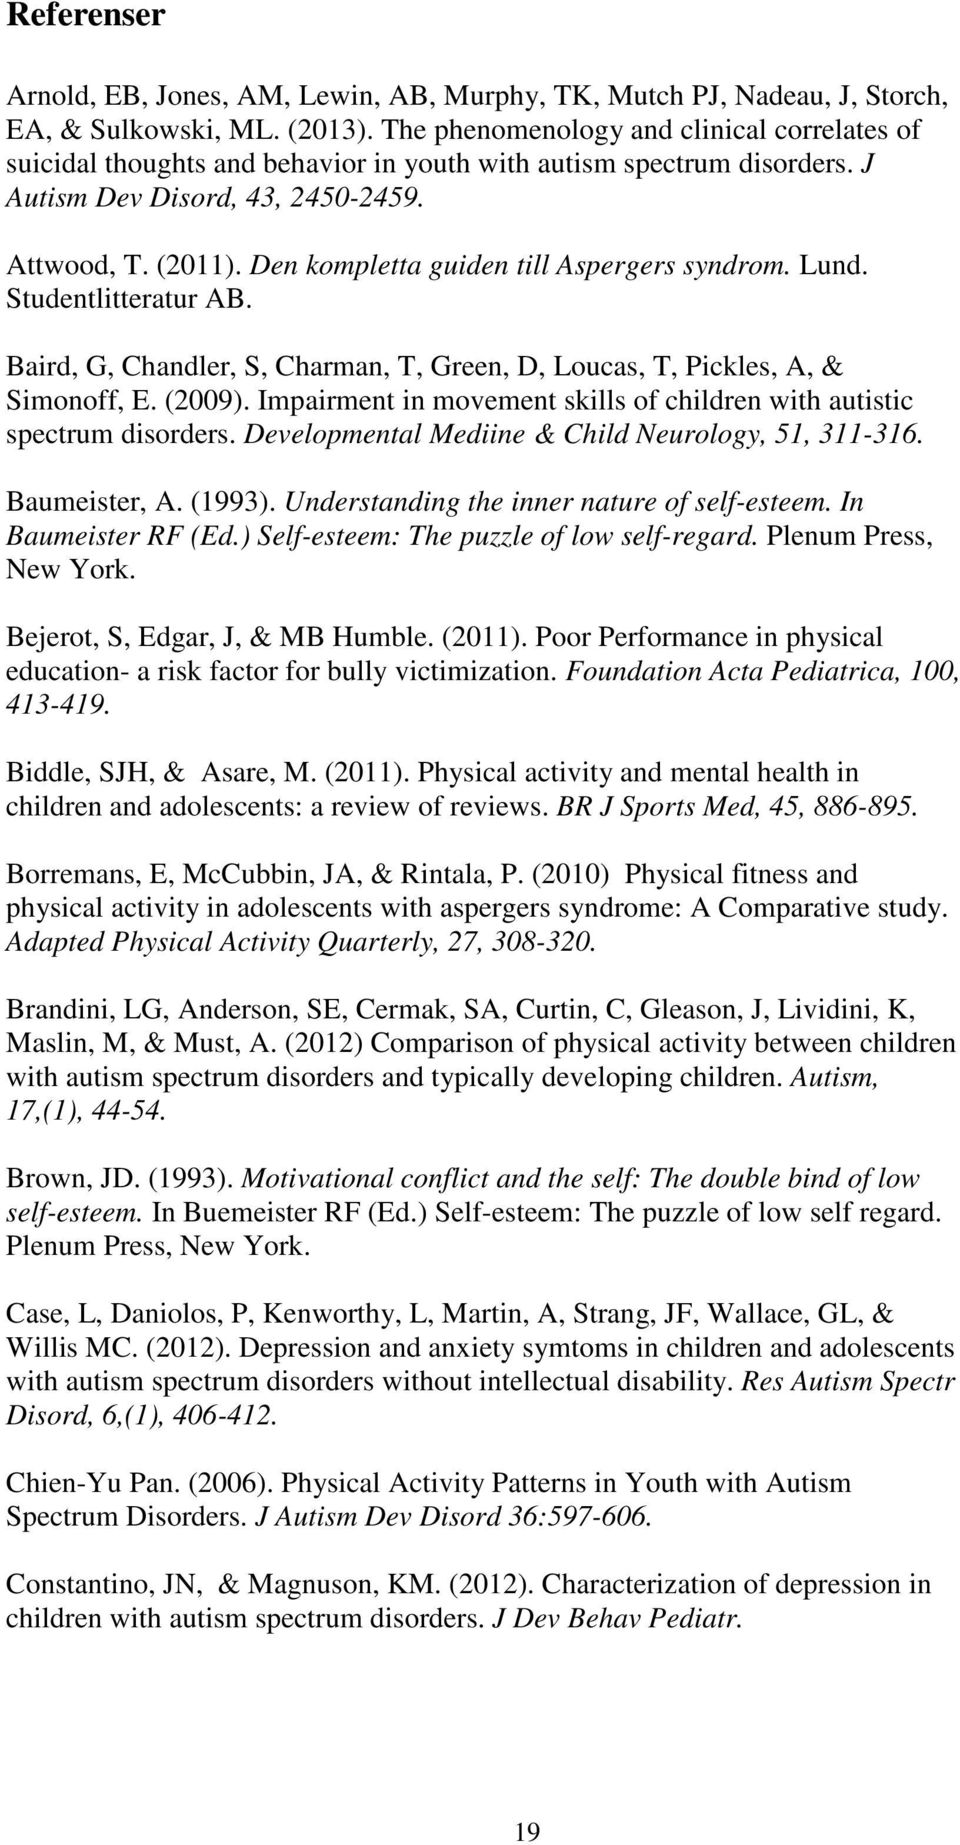 Den kompletta guiden till Aspergers syndrom. Lund. Studentlitteratur AB. Baird, G, Chandler, S, Charman, T, Green, D, Loucas, T, Pickles, A, & Simonoff, E. (2009).